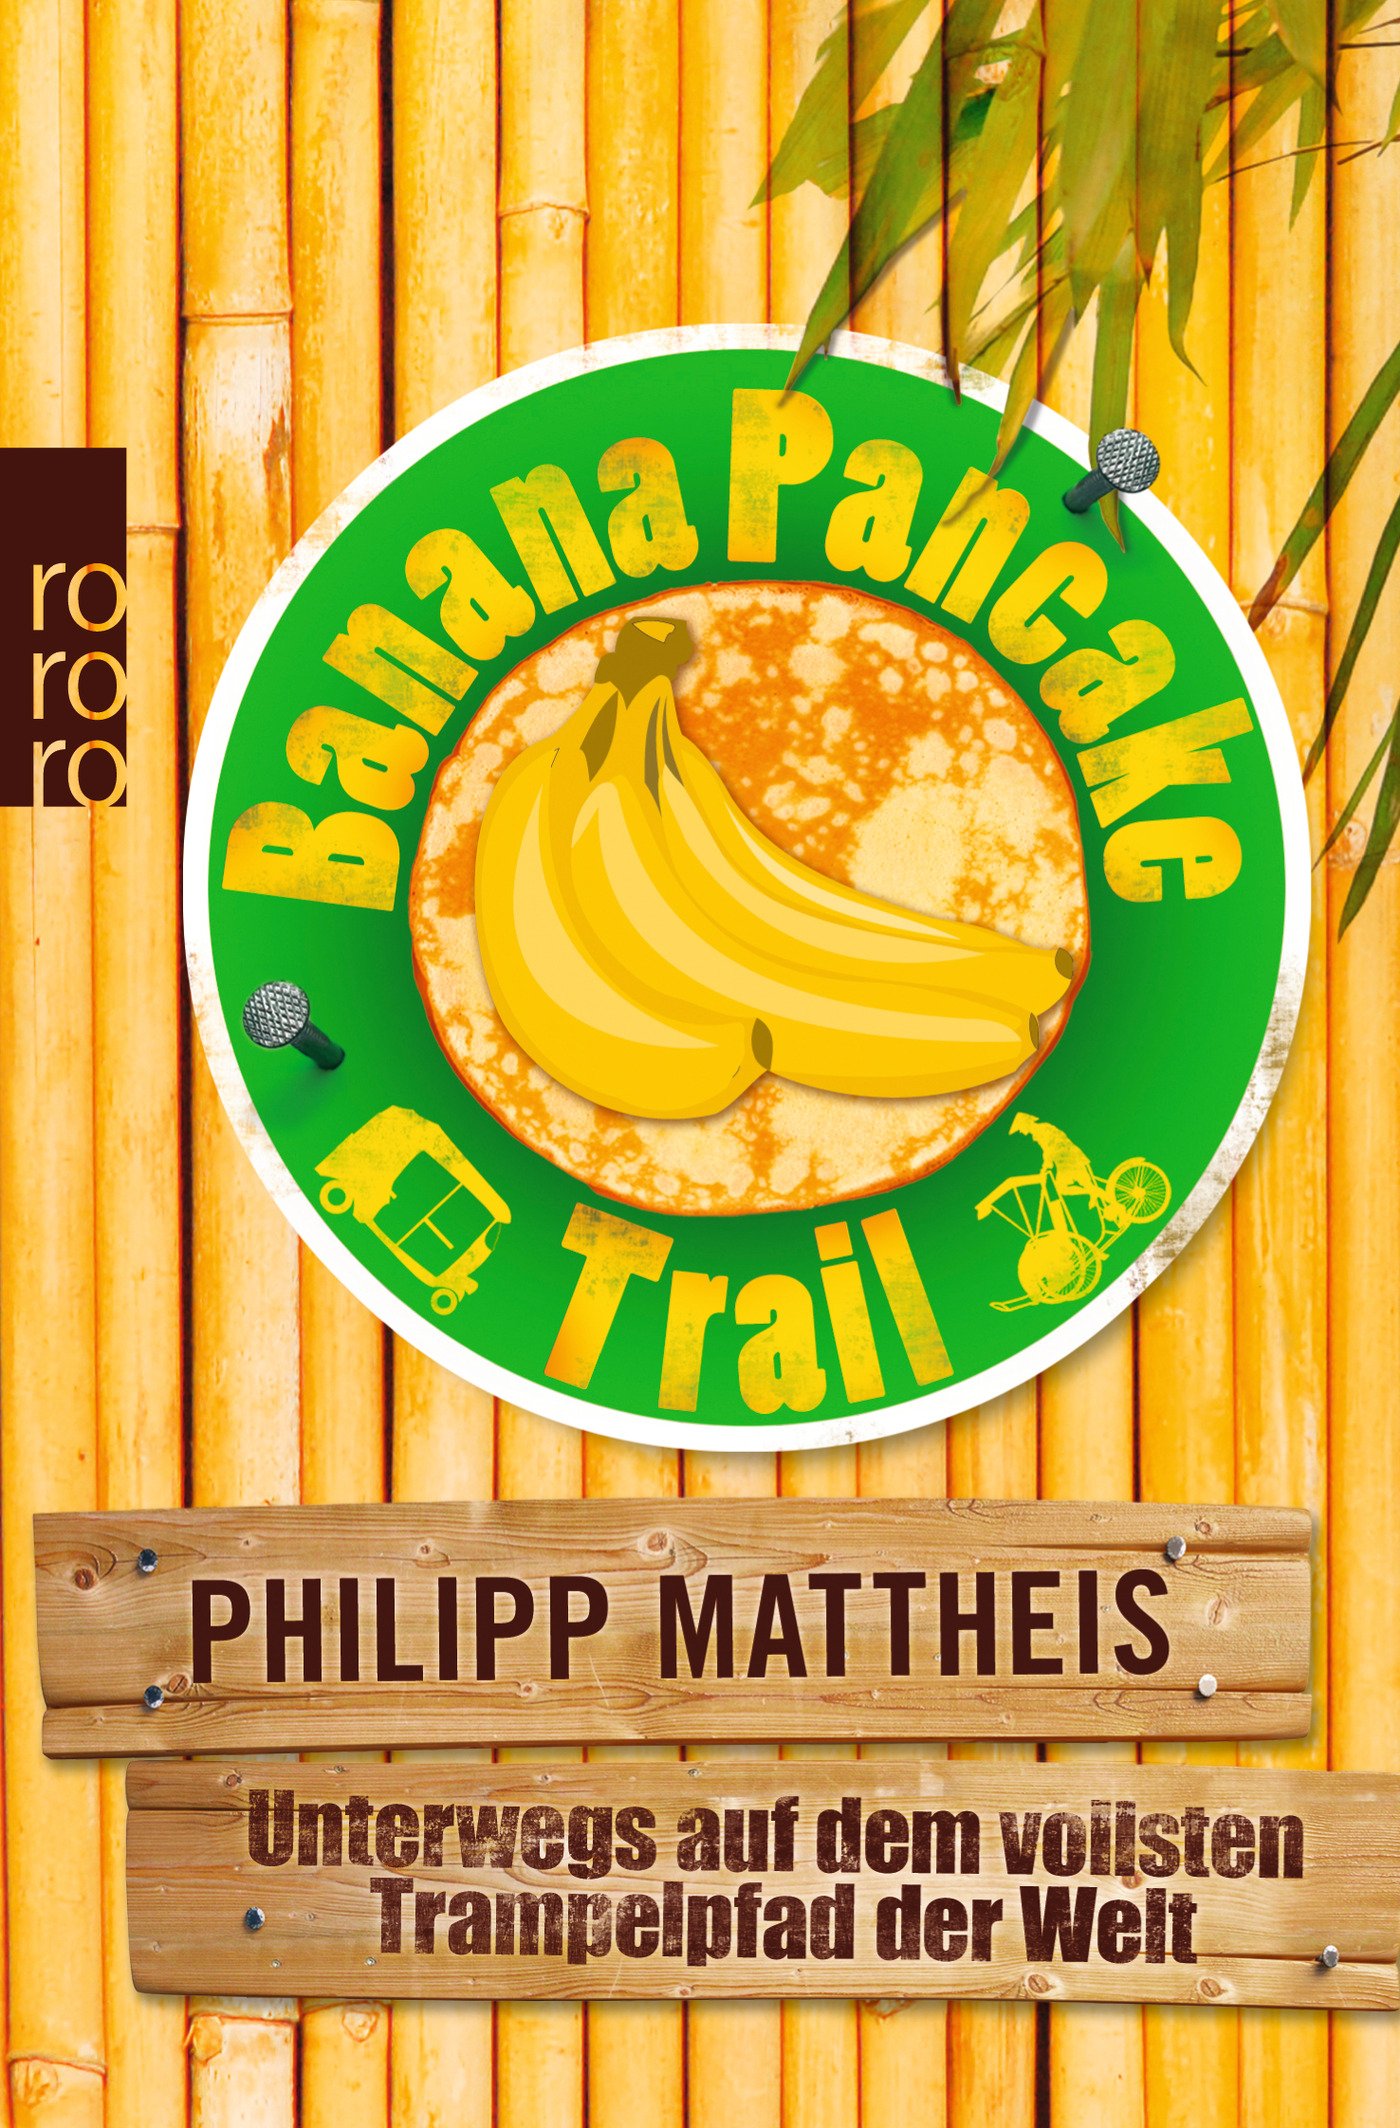 Banana Pancake Trail, Autor: Philipp Mattheis Verlag: Rowohlt Verlag